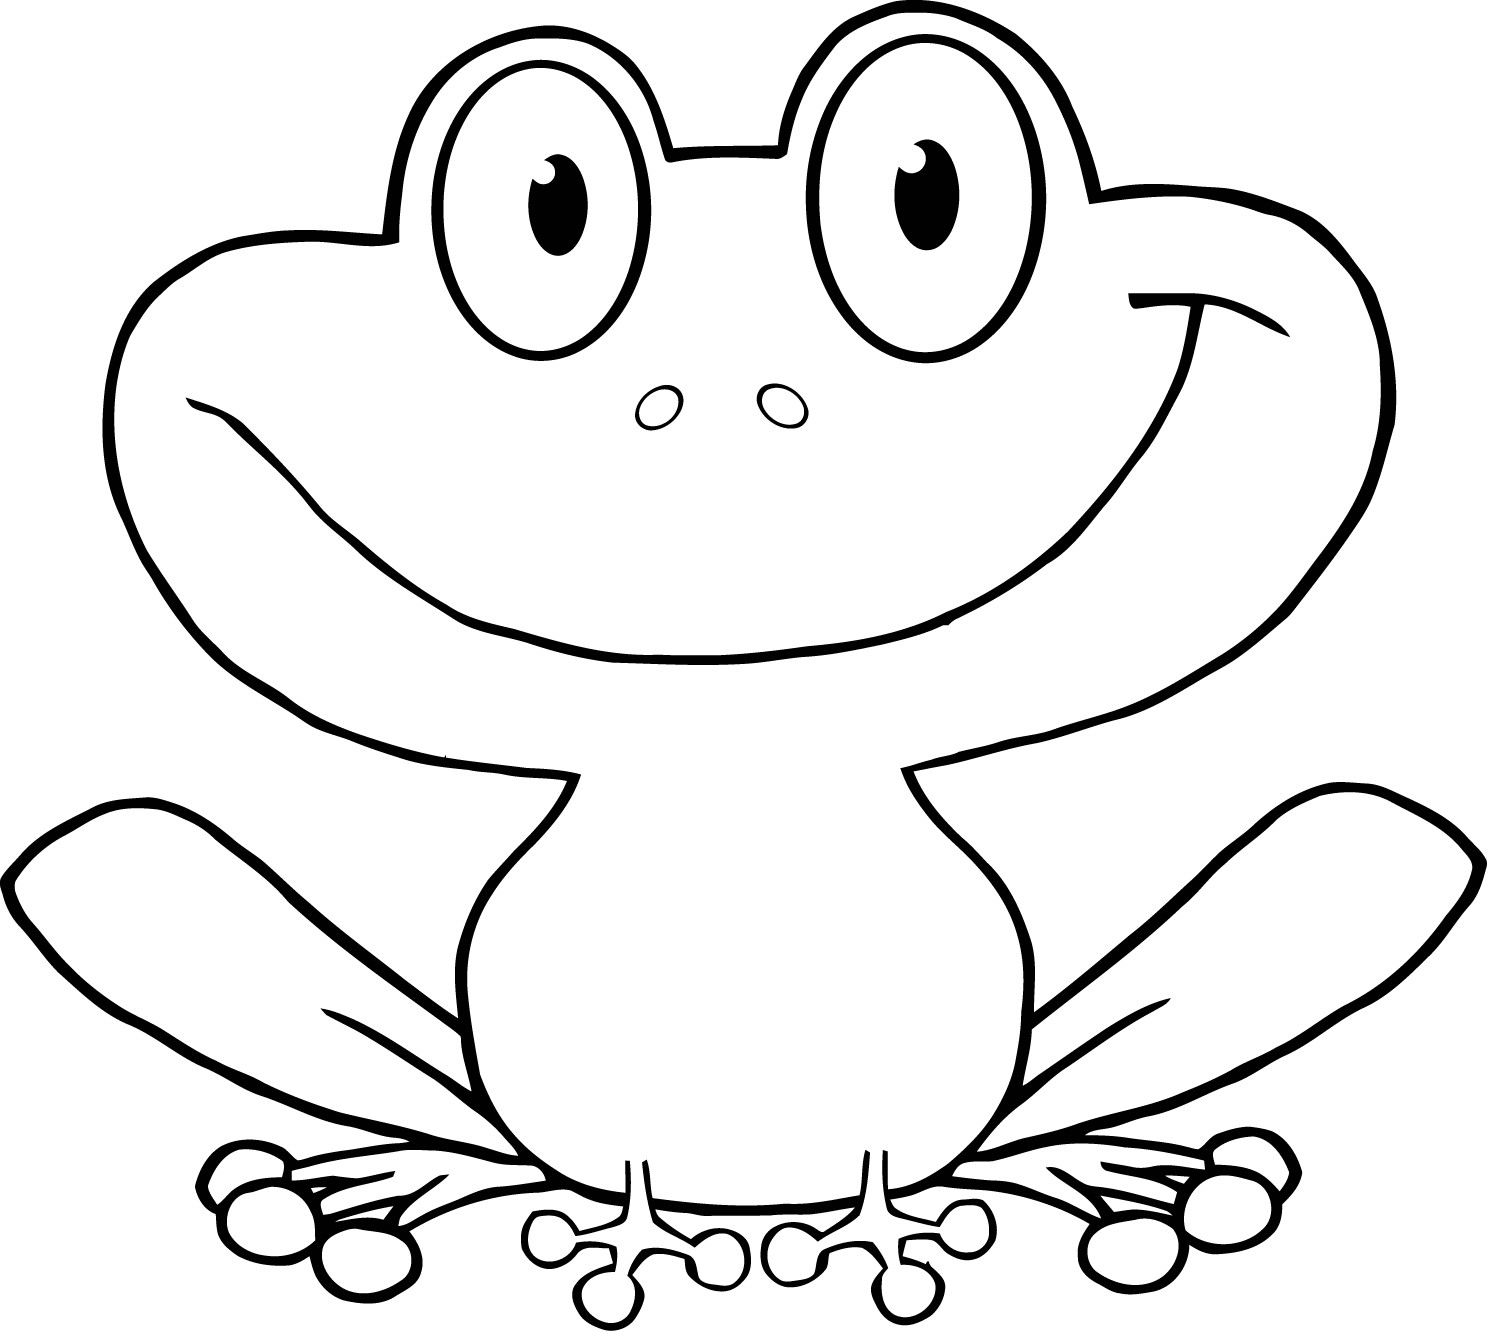 Frosch Ausmalbilder Zum Ausdrucken
 Frosch malvorlagen kostenlos zum ausdrucken Ausmalbilder